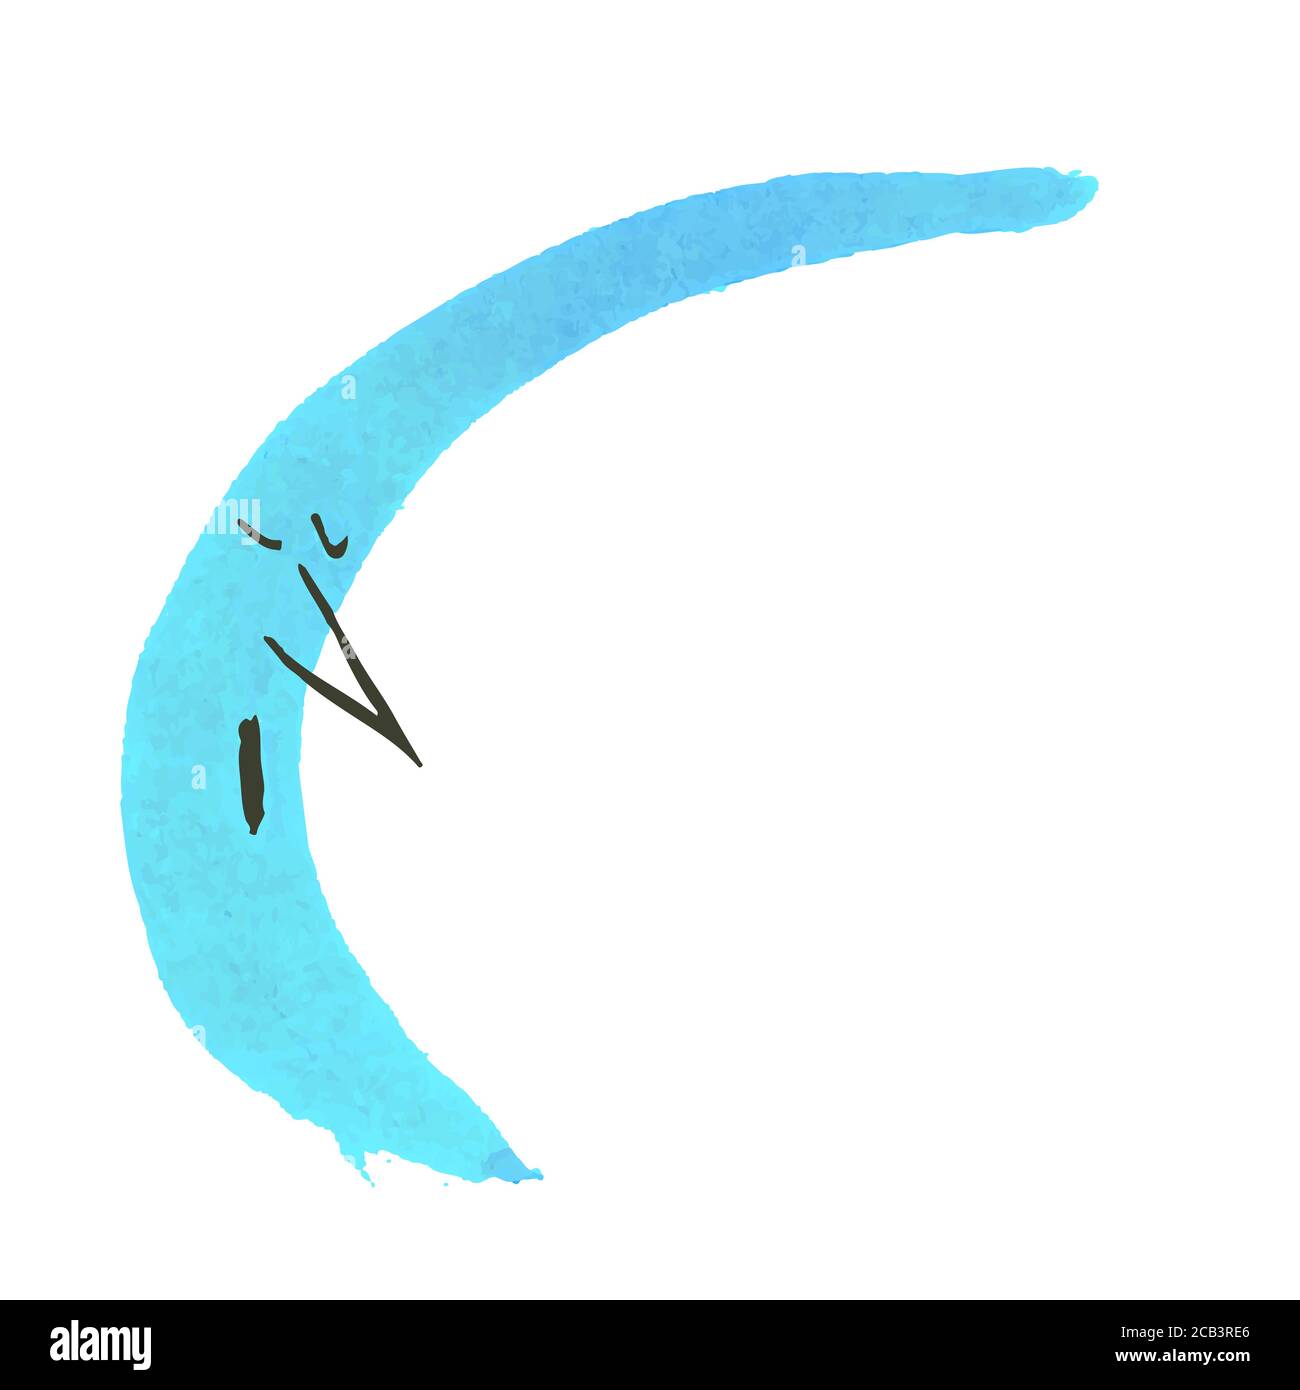 Pennellate espressive Handrawn Pennello Strokes Cartoon Blue Moon Illustrazione Vettoriale